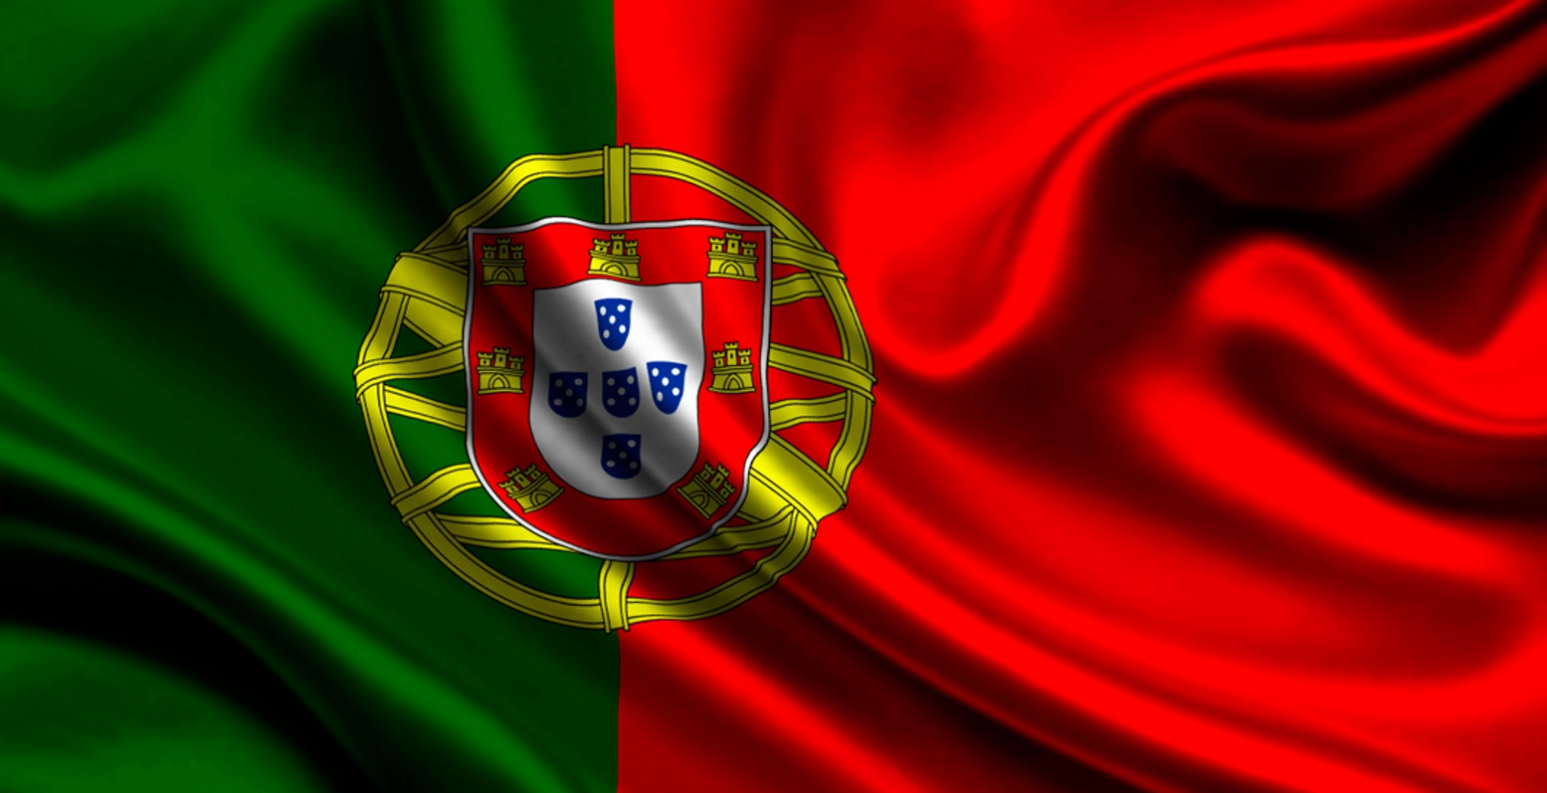 Πορτογάλος διεθνής ποδοσφαιριστής των 90’ς χρεωκόπησε και ζει πλέον με τους γονείς του (βίντεο)